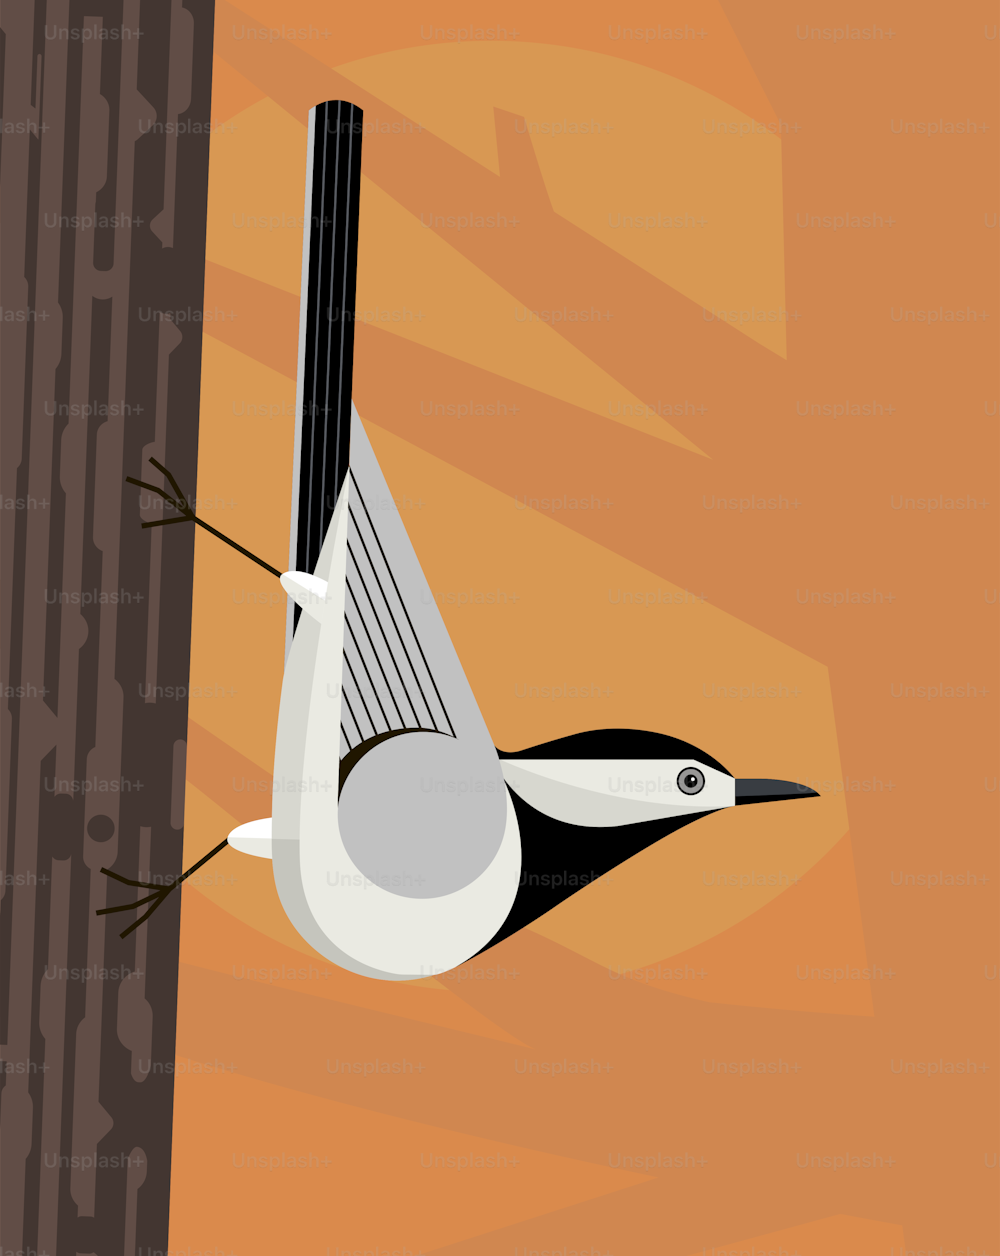 하얀 wagtail은 나무 줄기를 따라 고결하게 움직이며 양식화 된 이미지